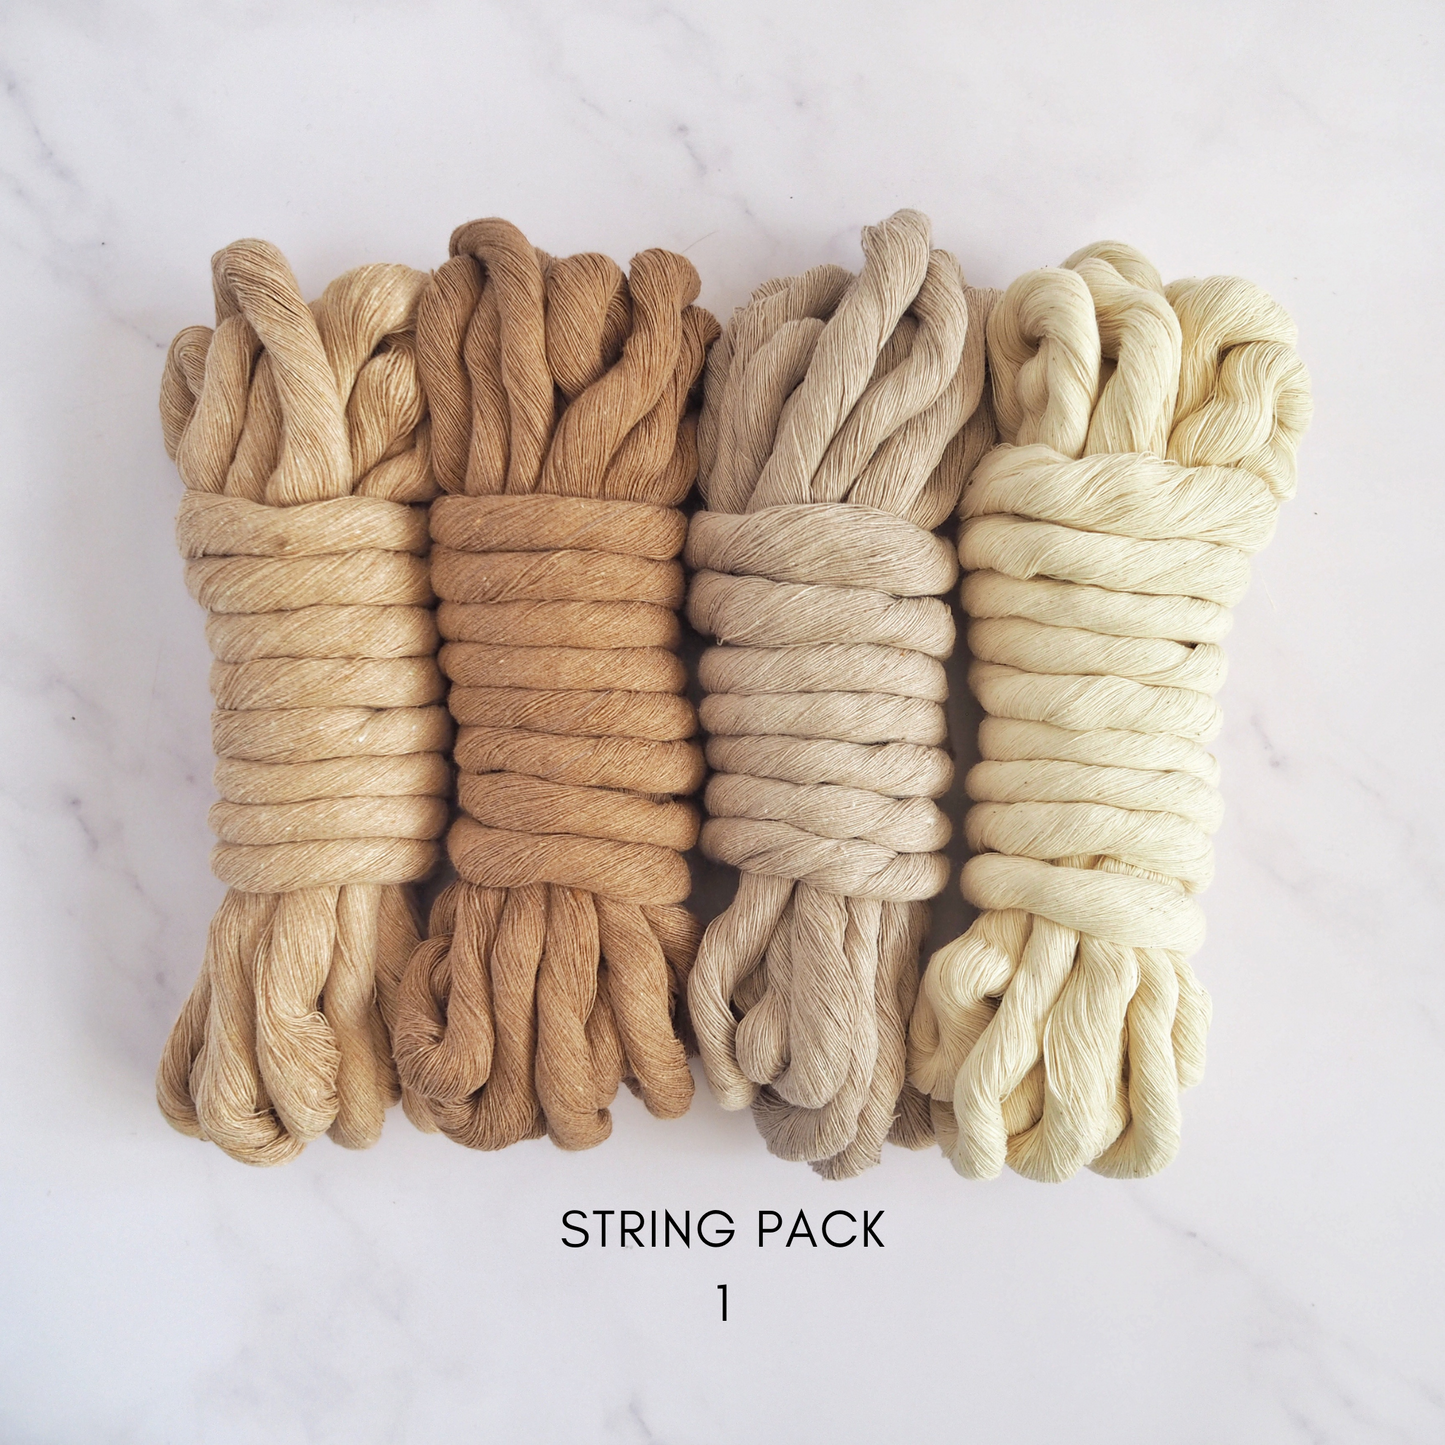 12mm String | Pack 1 The Joyful Studio